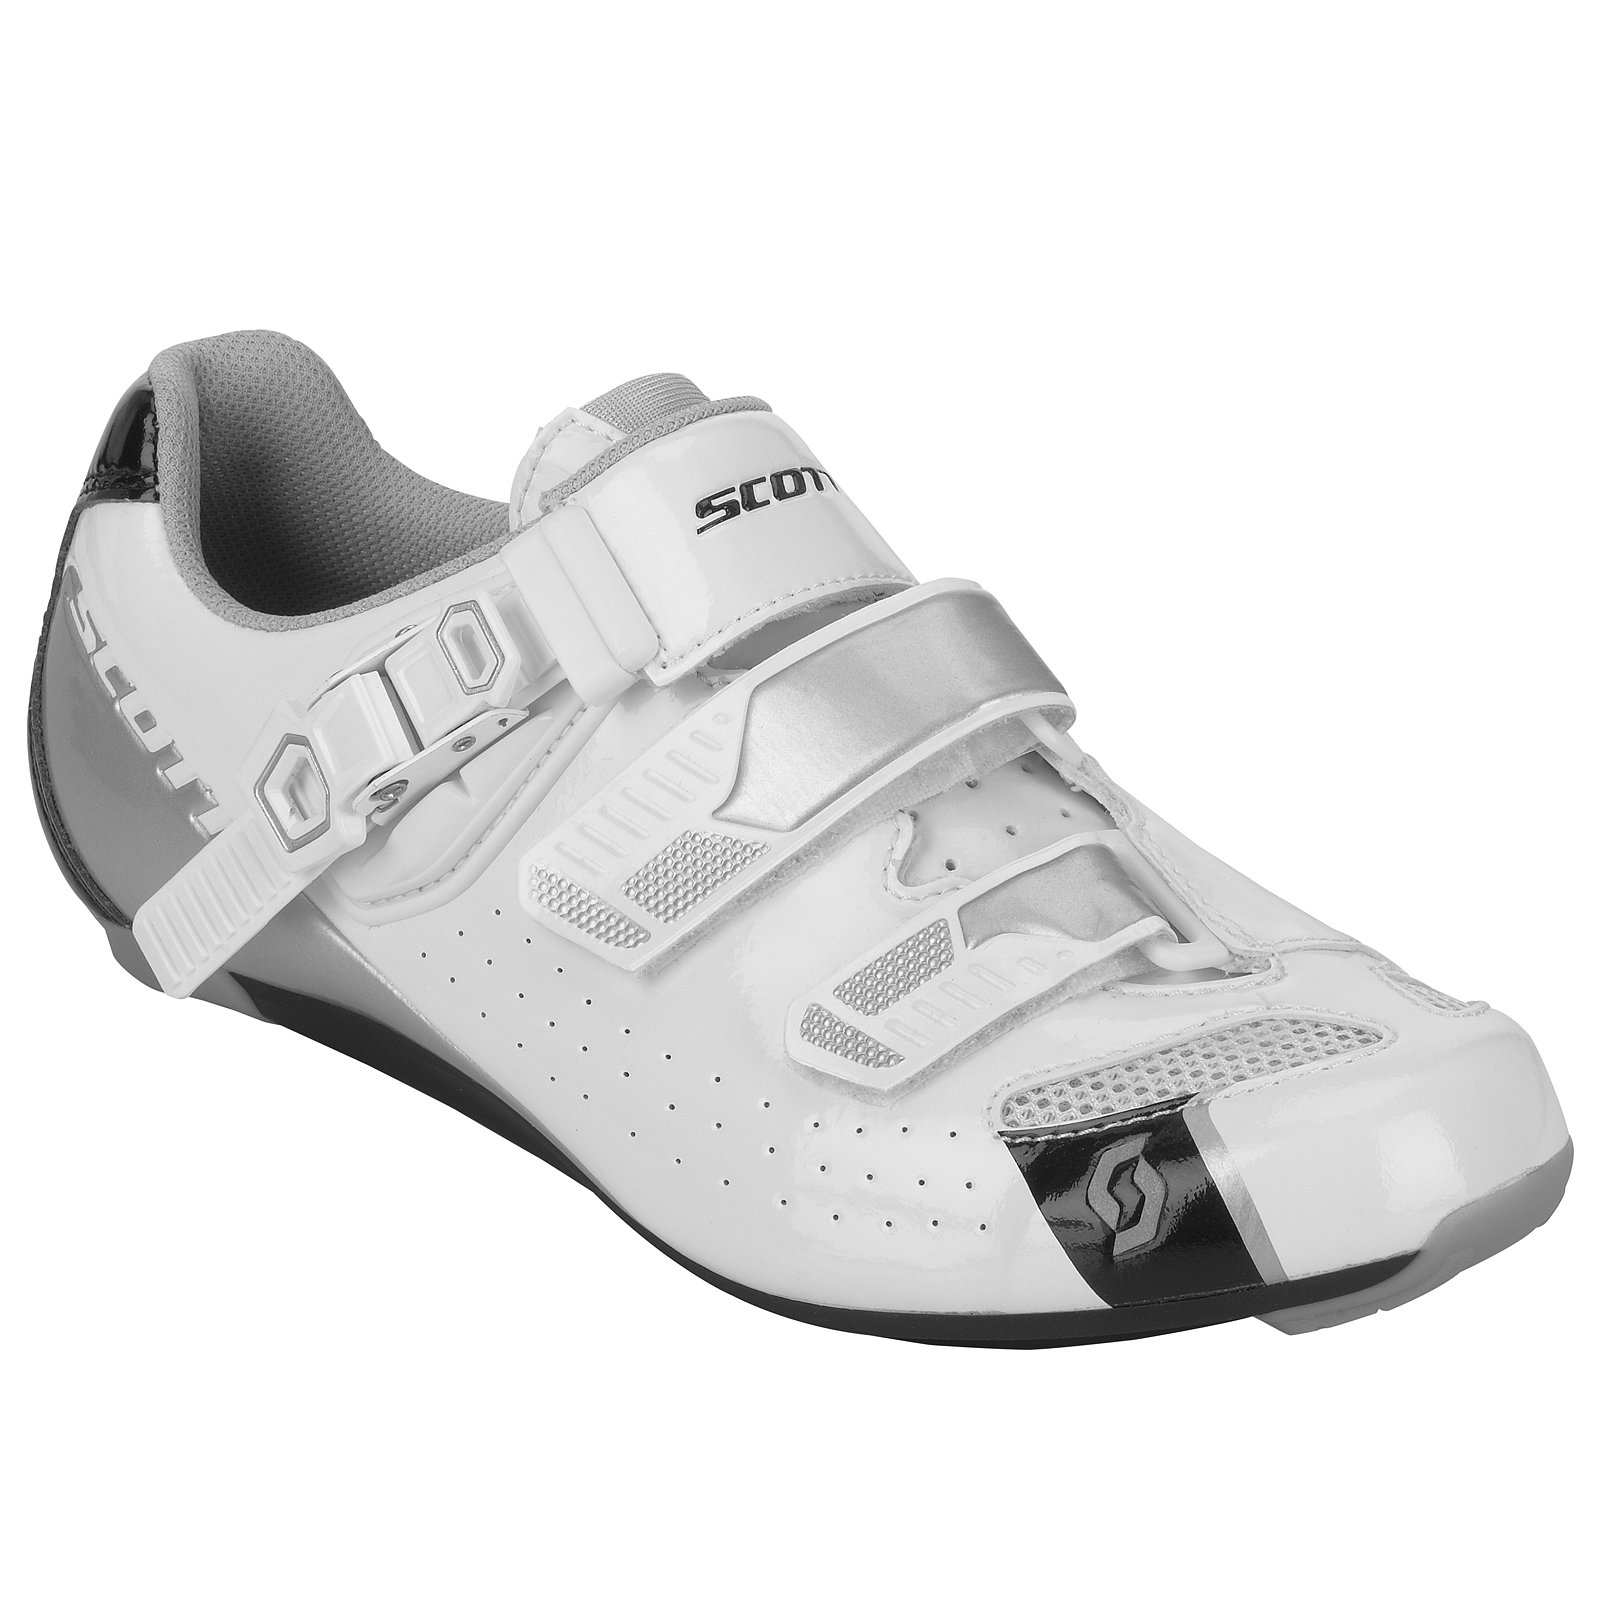 Scott Road Tri Pro Triathlon Fahrrad Schuhe weiß/schwarz 2020 